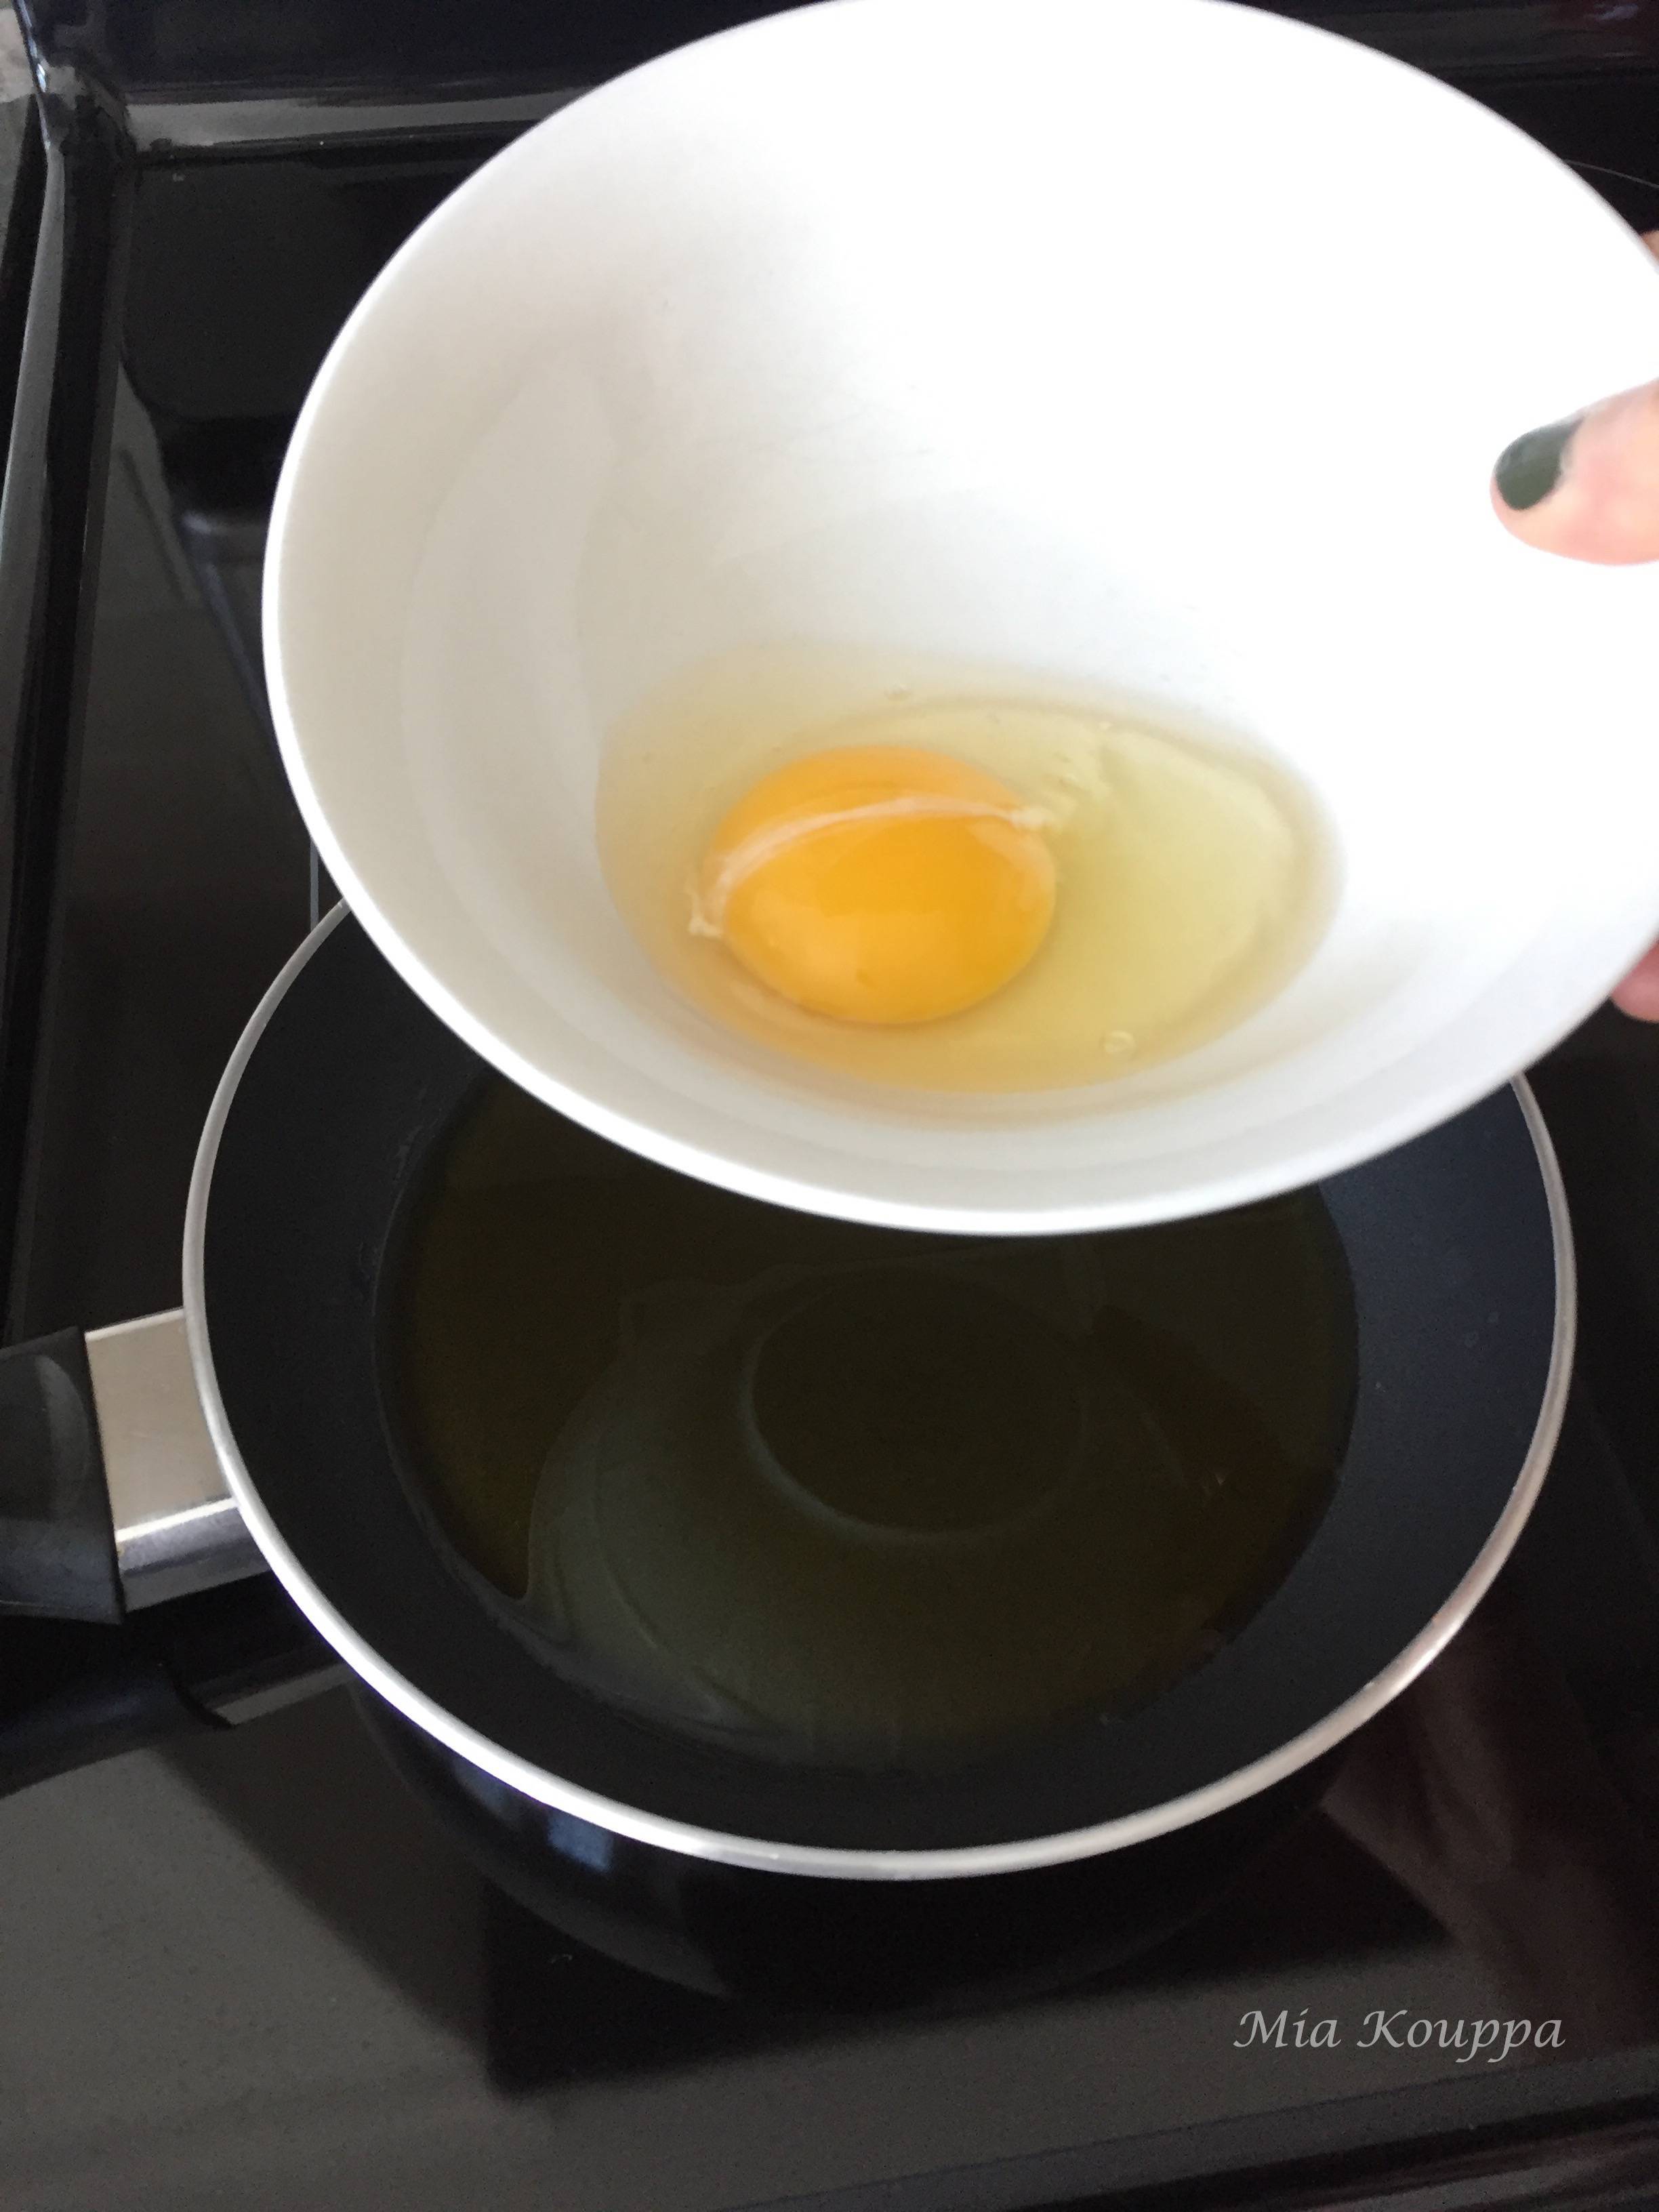 Fried egg (Αυγό τηγανητό)